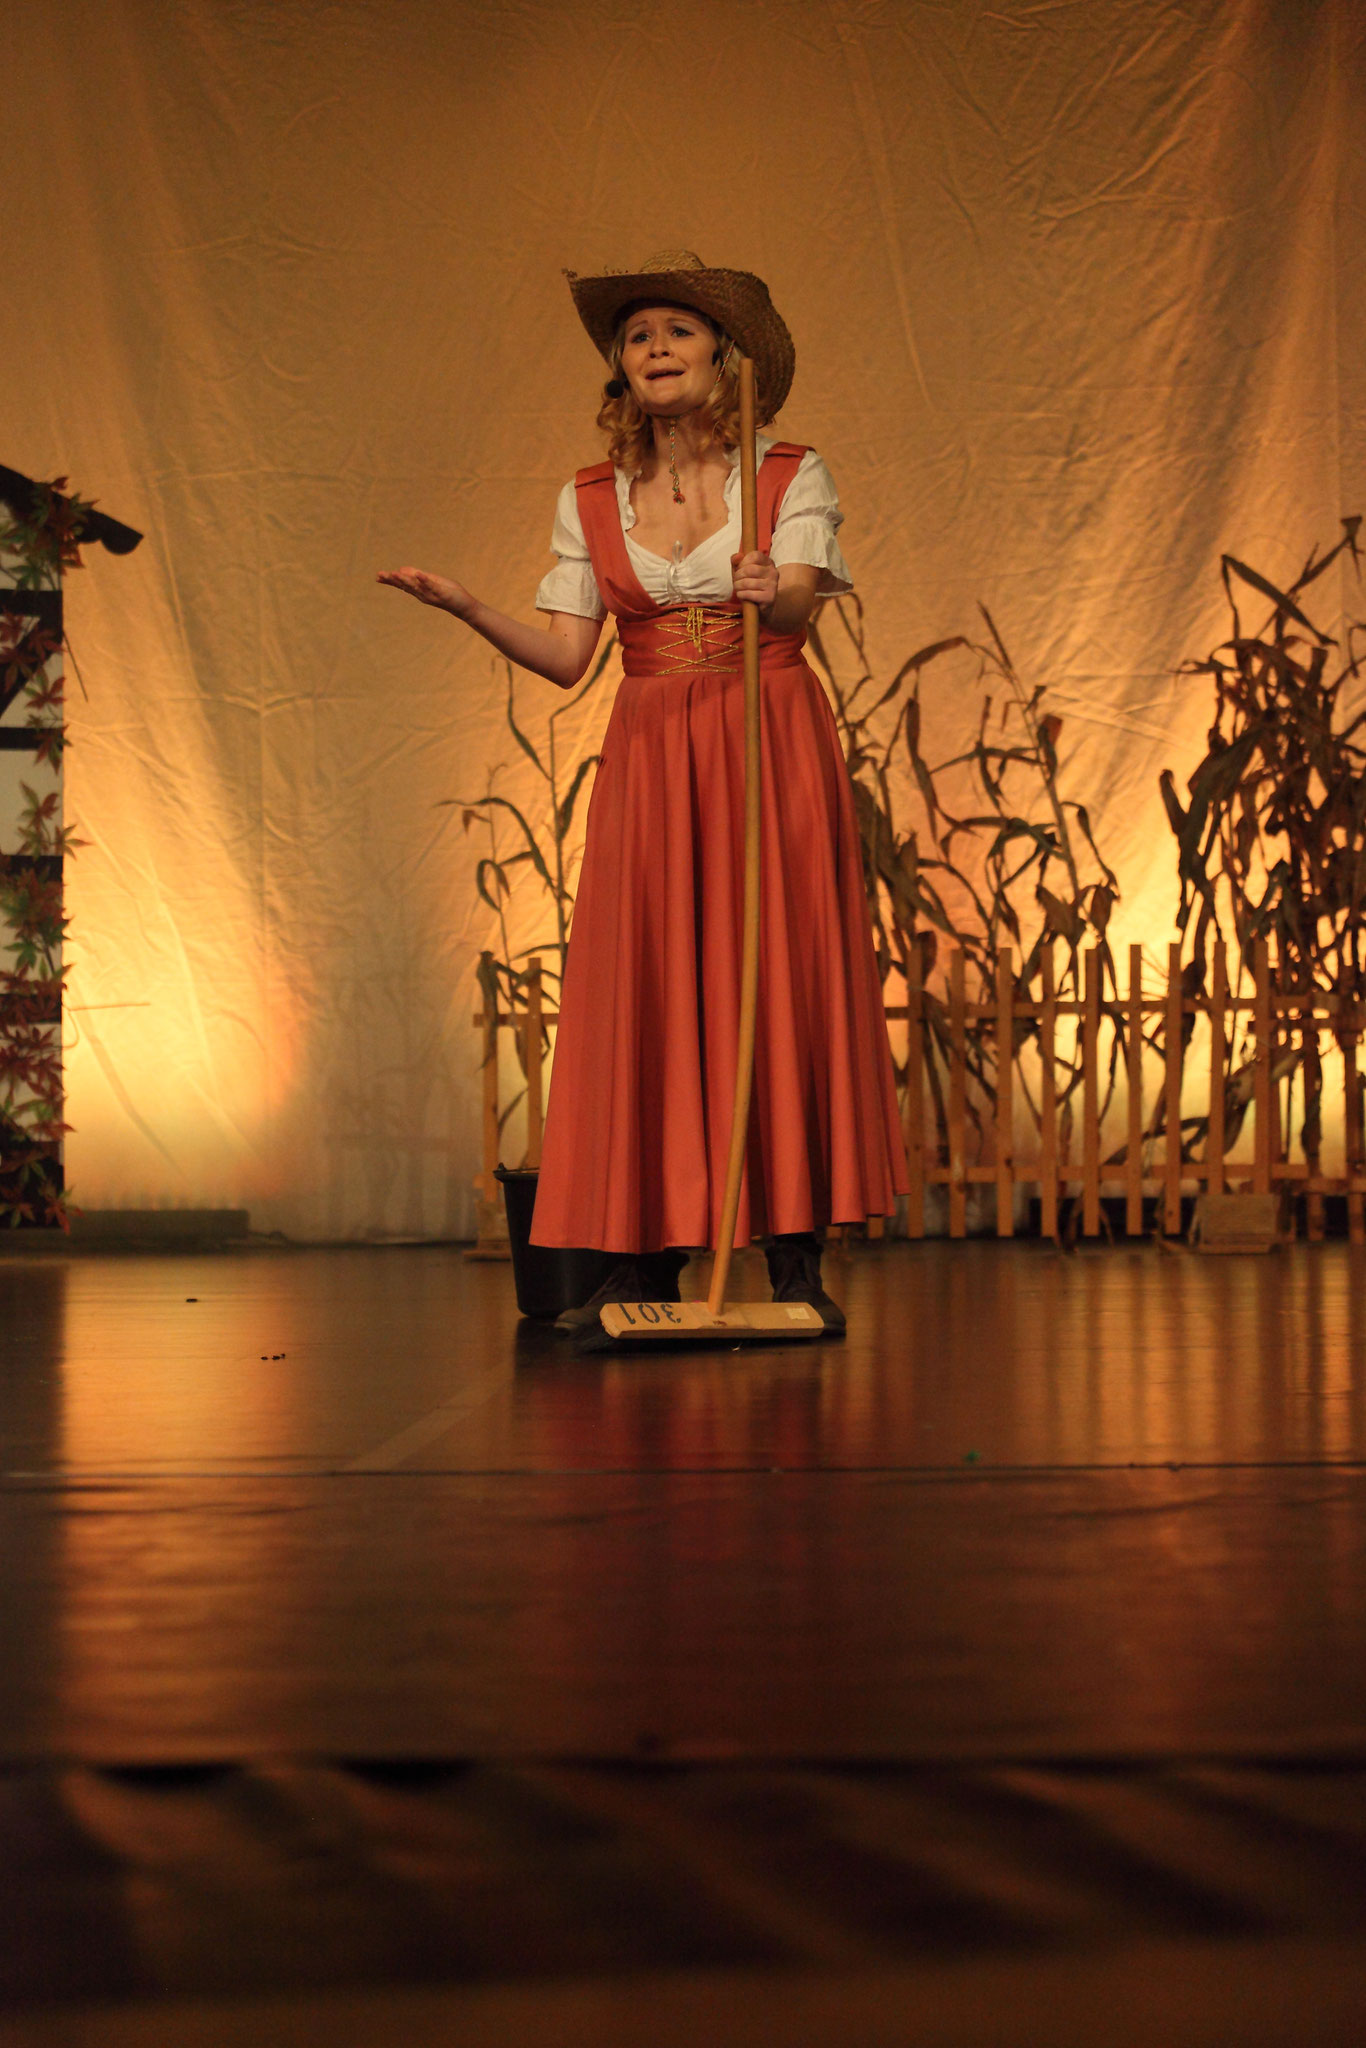 Tante Em in der Zauberer von Oz - auf der Suche nach Dorothy